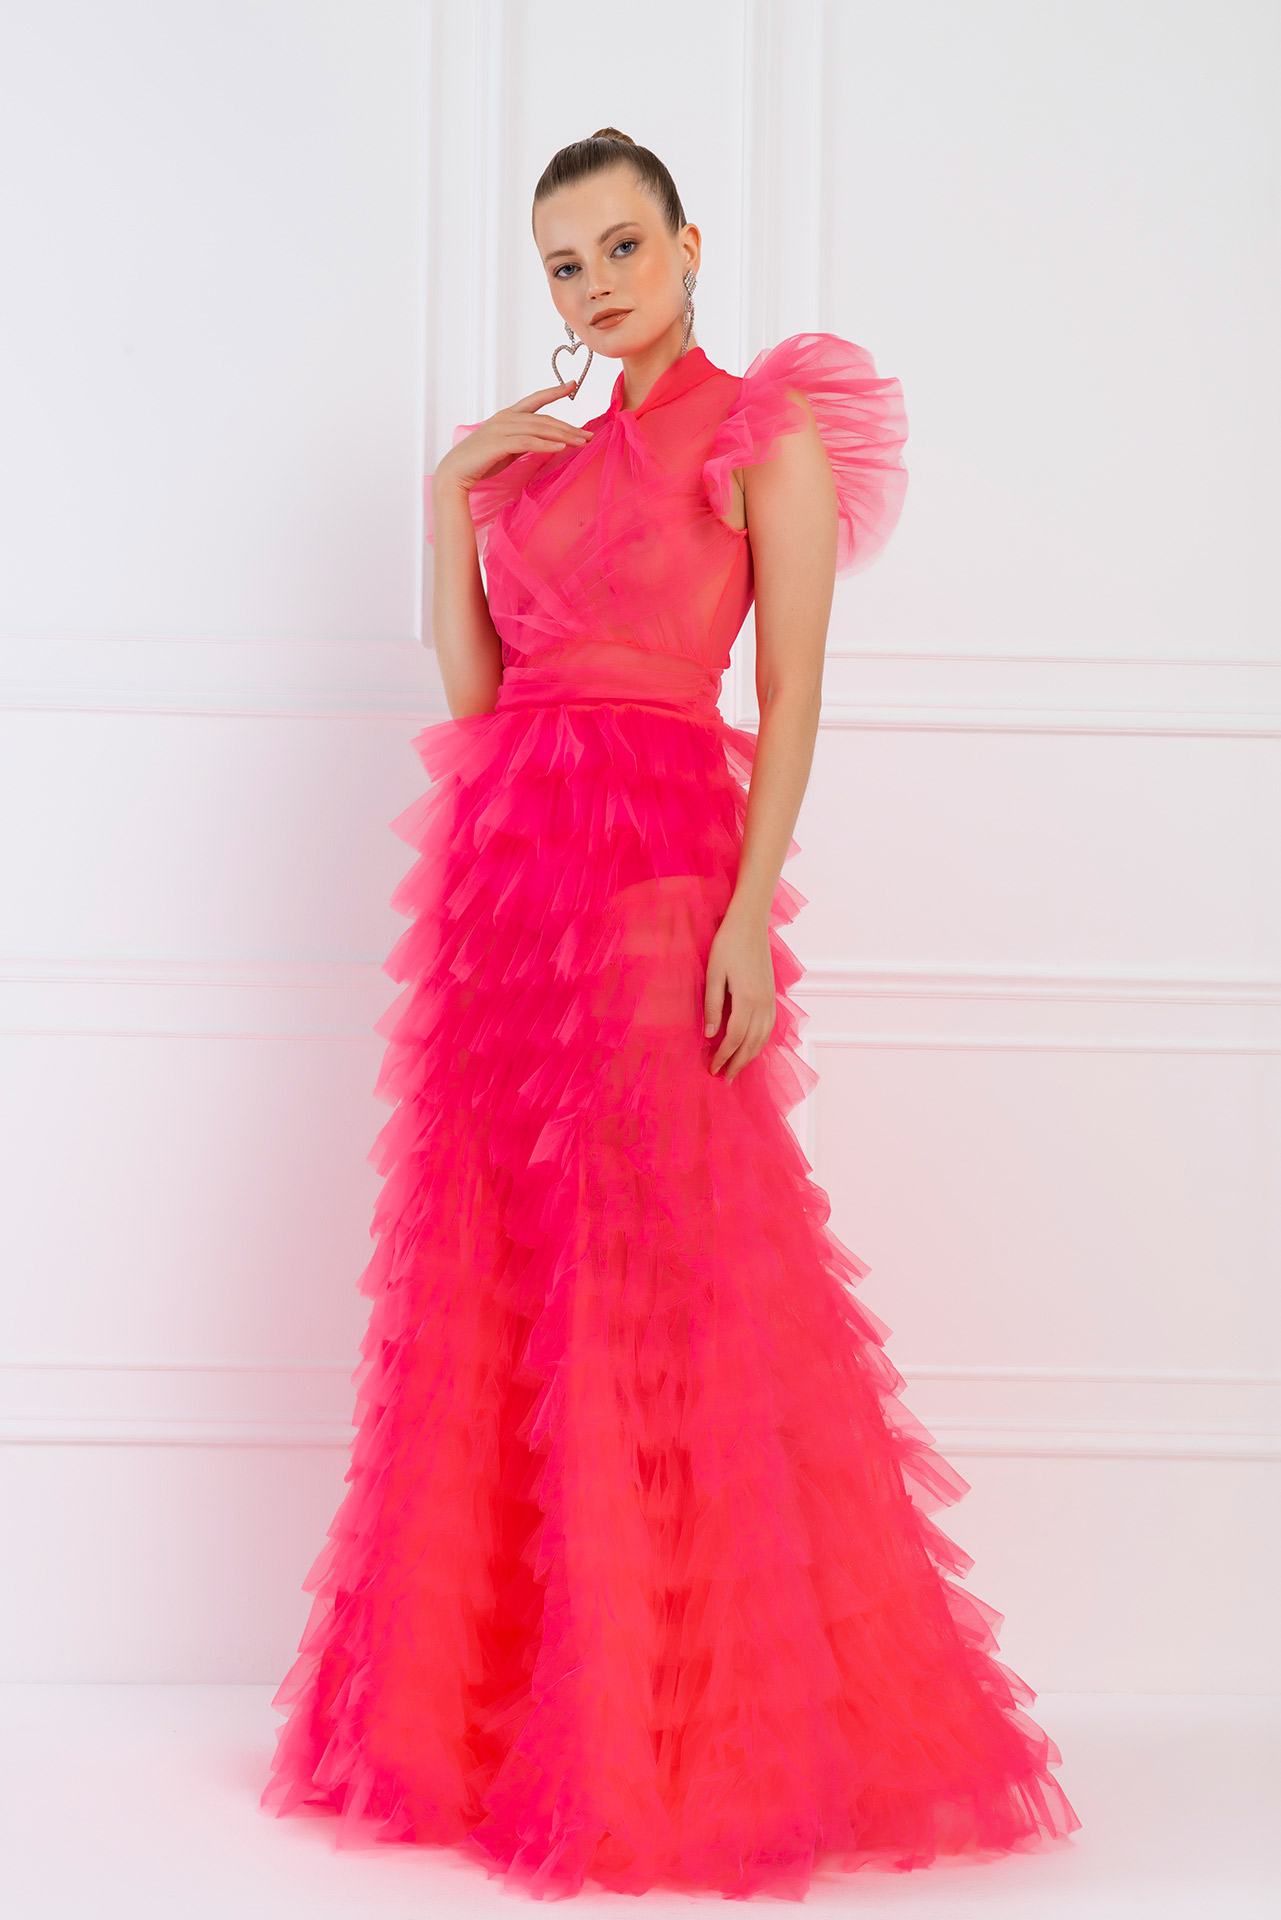 Прозрачное платье из Тюля Neon Pink Длинное платье